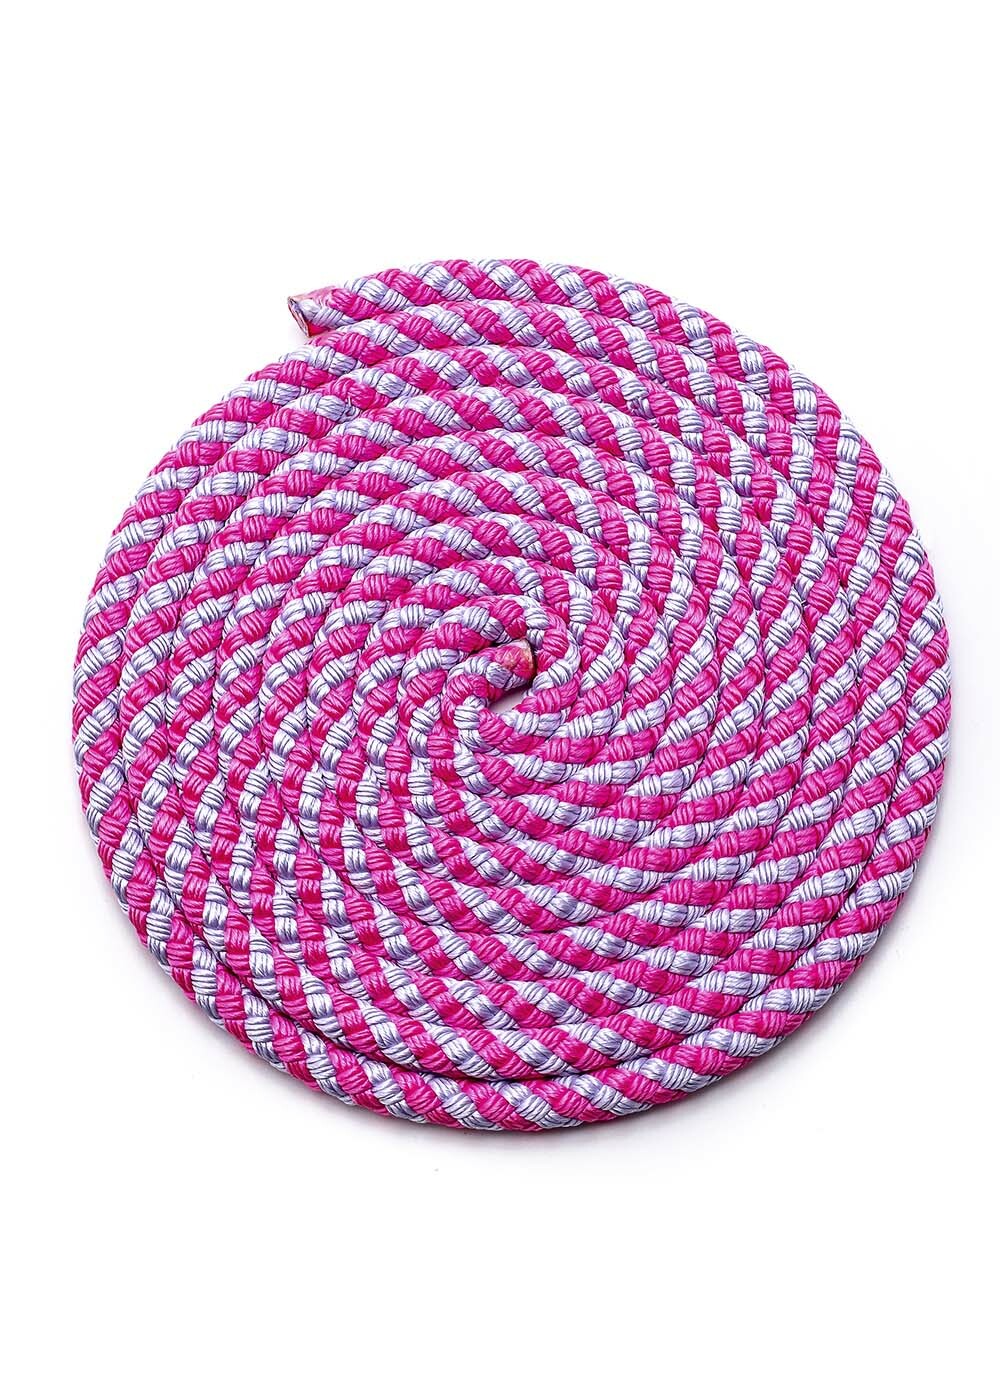 Sasaki Japan RG Rhythmic Gymnastics Spiral Rope L:2.5m MJ-243 Pink Lavender 